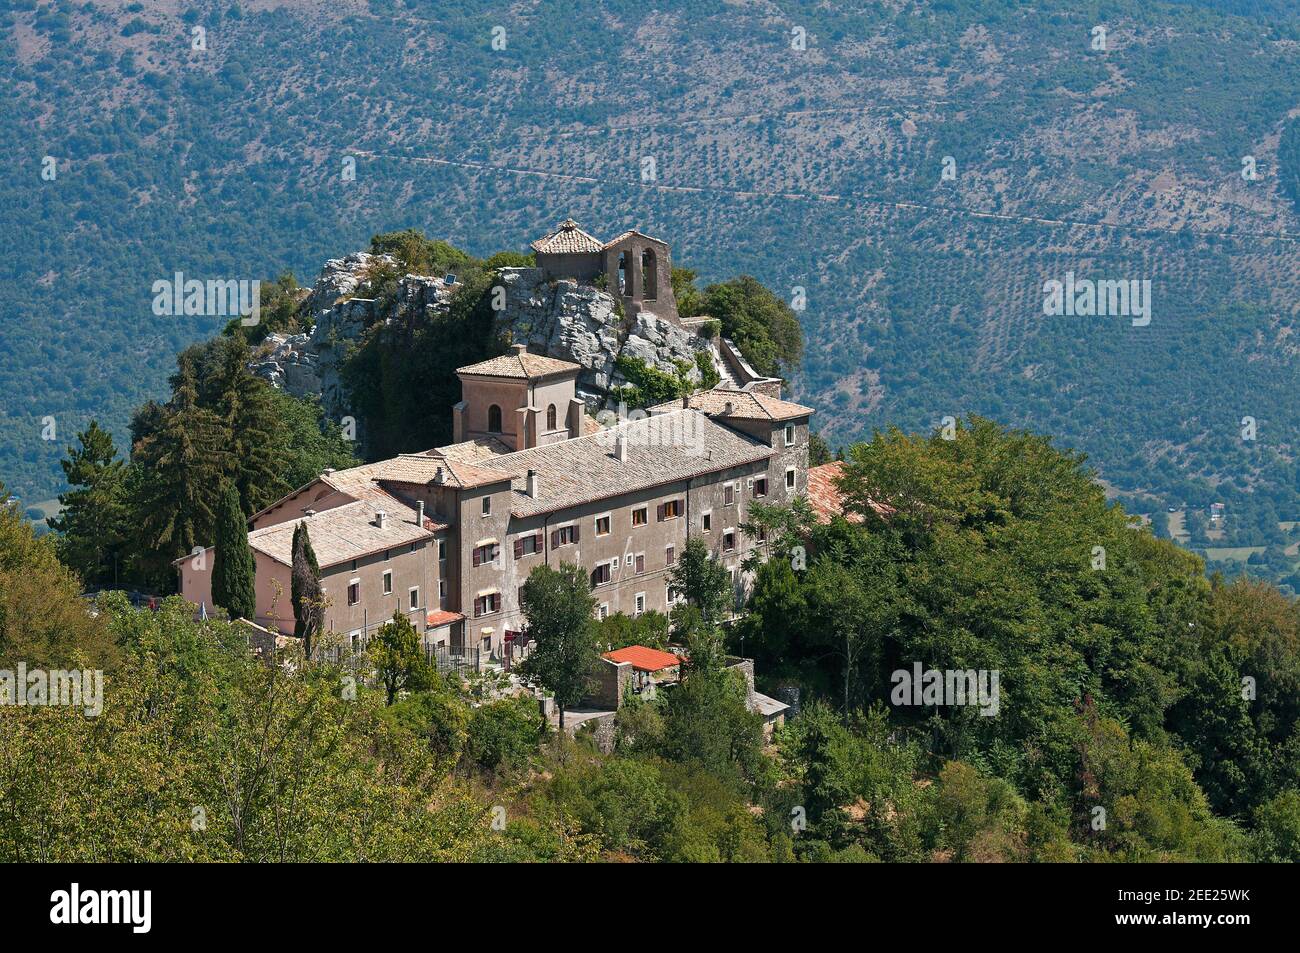 Santuario della Mentorella (Shrine of Mentorella) near Guadagnolo, Prenestini mountains, Lazio, Italy Stock Photo